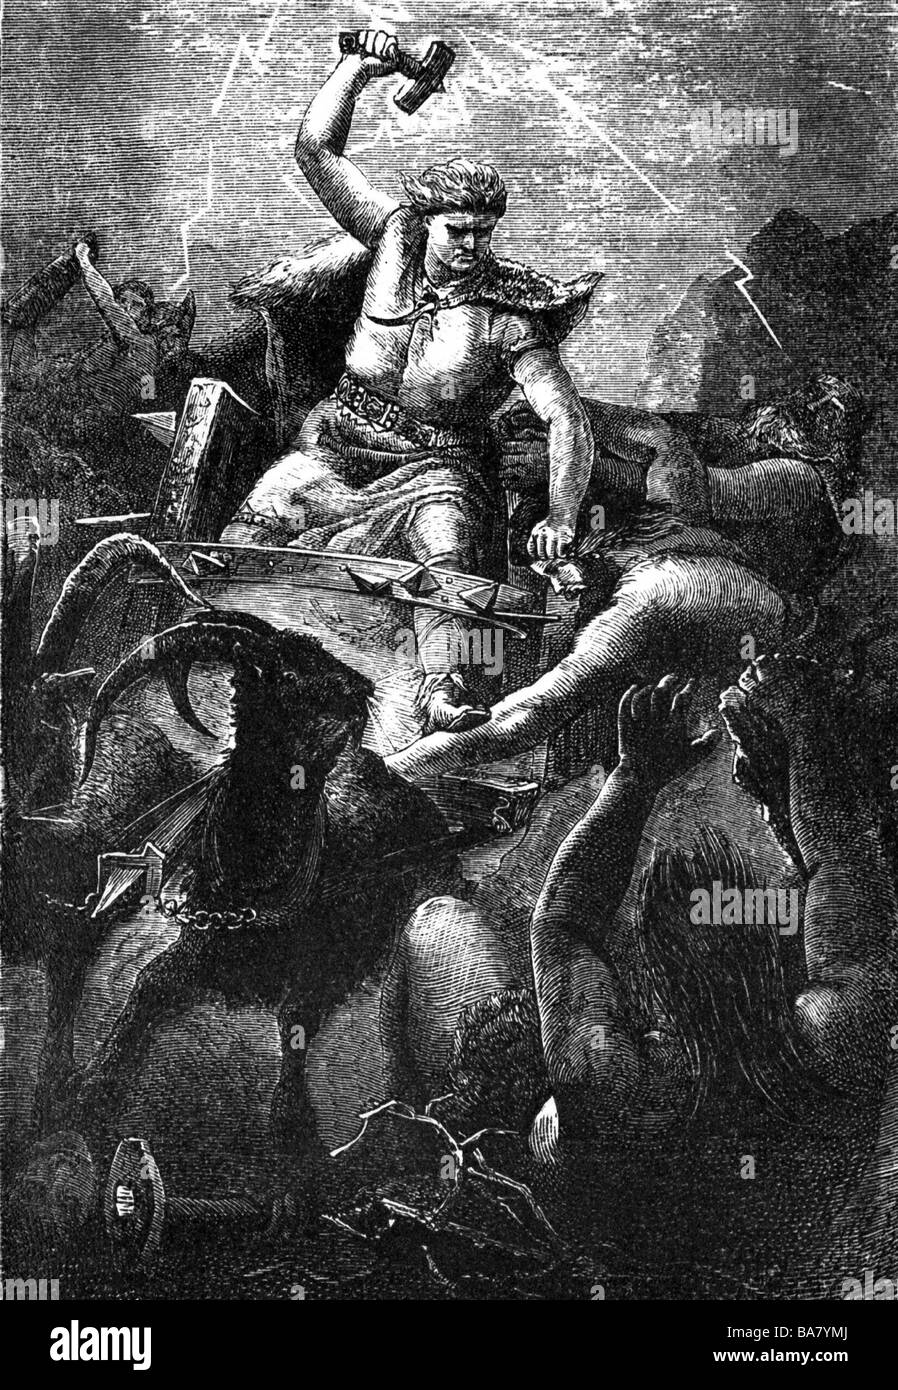 Thor, dios germánico de trueno, szene, golpeando con su martillo, grabado de madera, siglo 19, Foto de stock